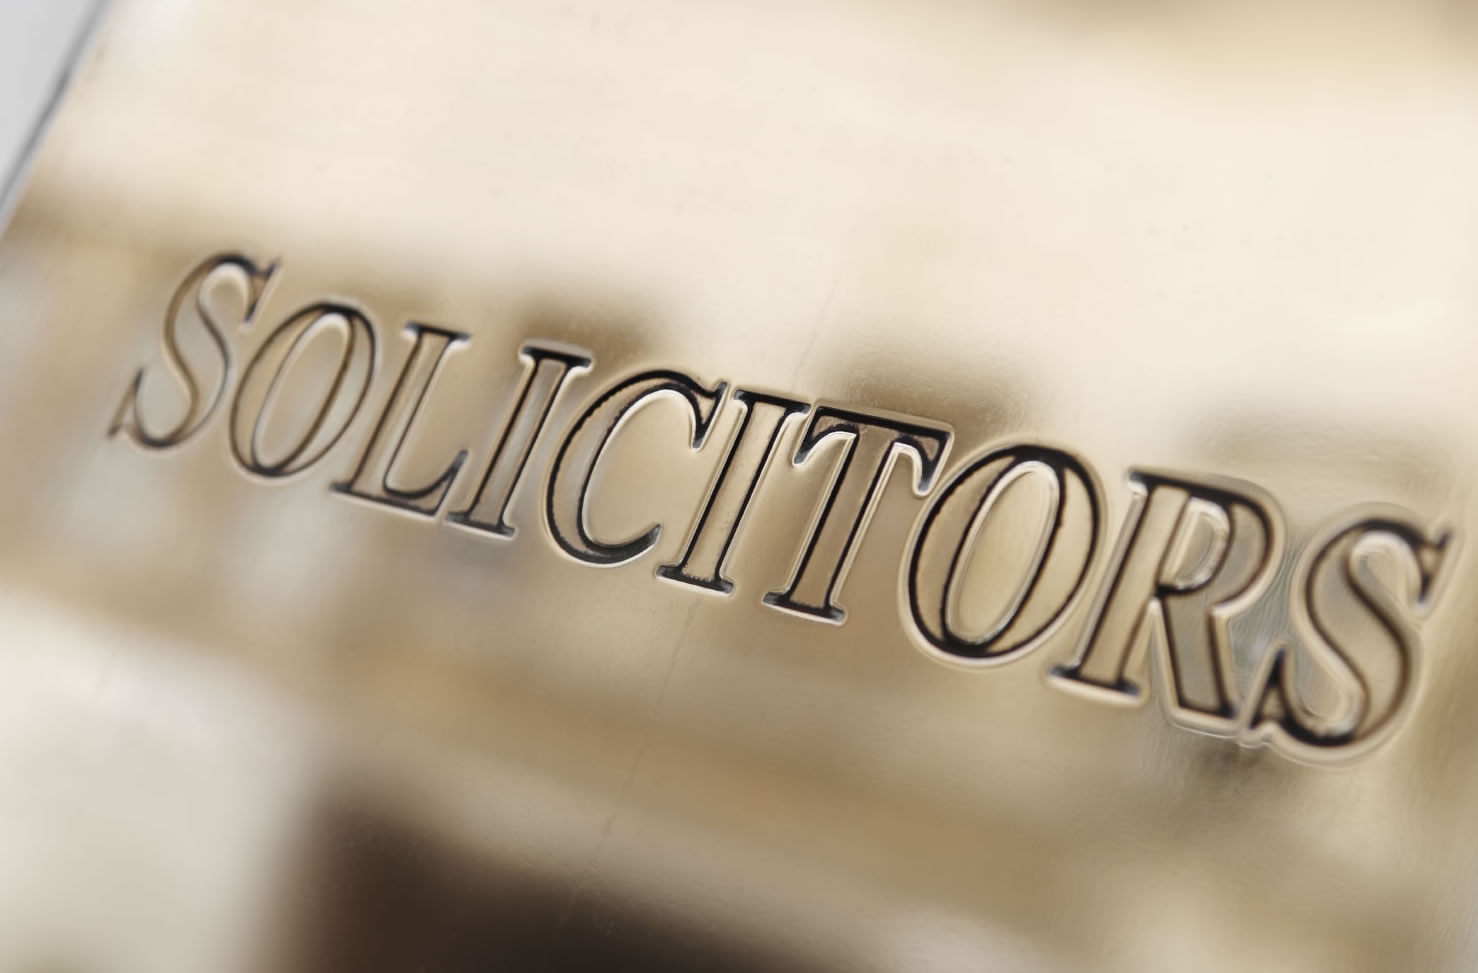 Solicitor struck off for misleading regulator